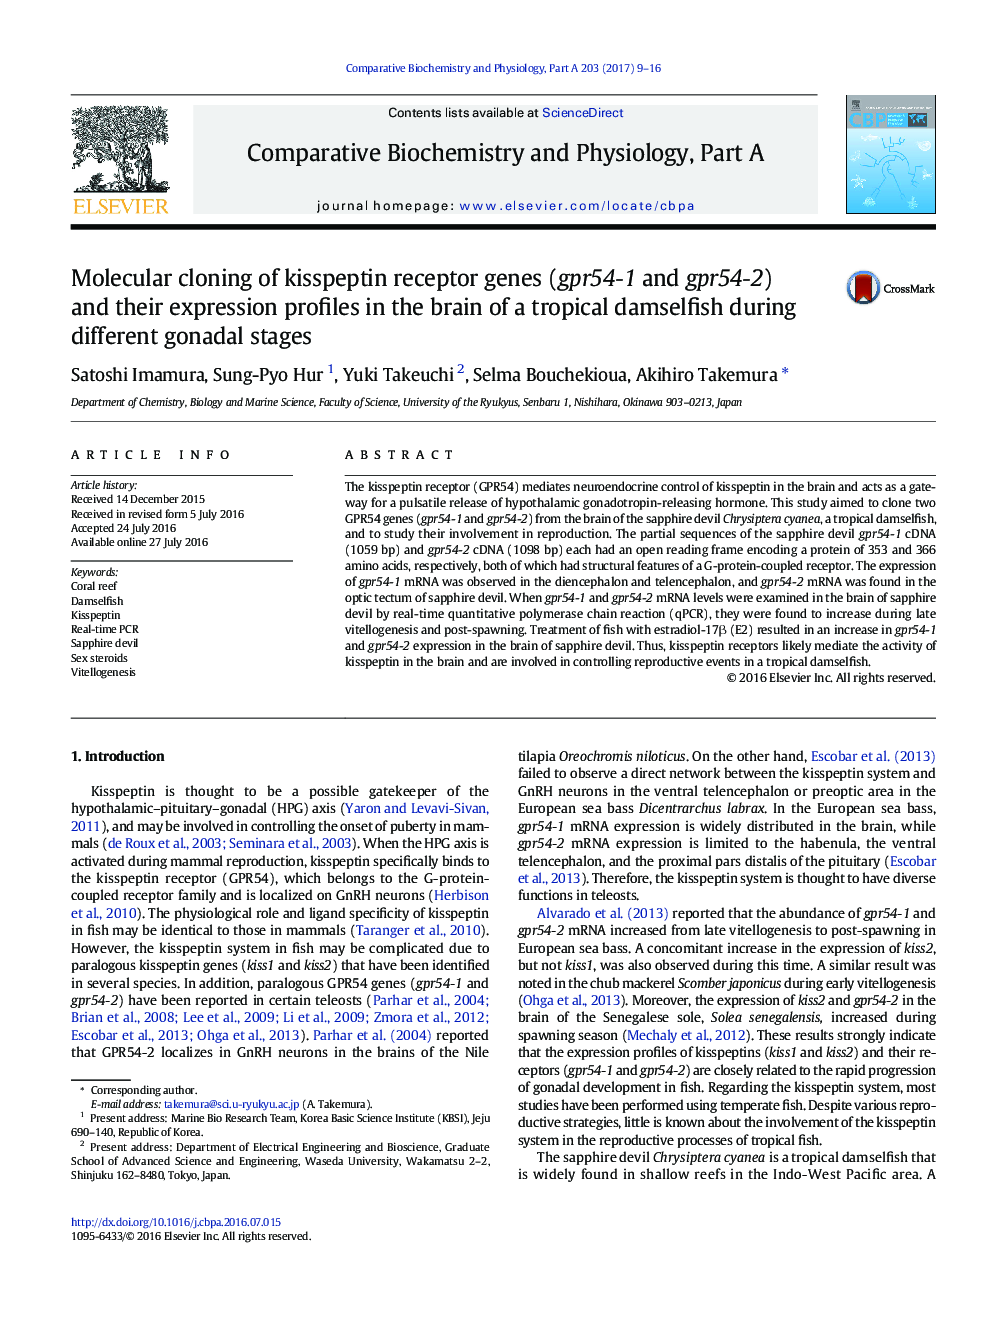 شبیه سازی مولکولی (gpr54-1 و gpr54-2) ژن های گیرنده kisspeptin و ویژگی های بروز آنها در مغز یک دوشیزه‌ماهی گرمسیری در مراحل مختلف غدد جنسی